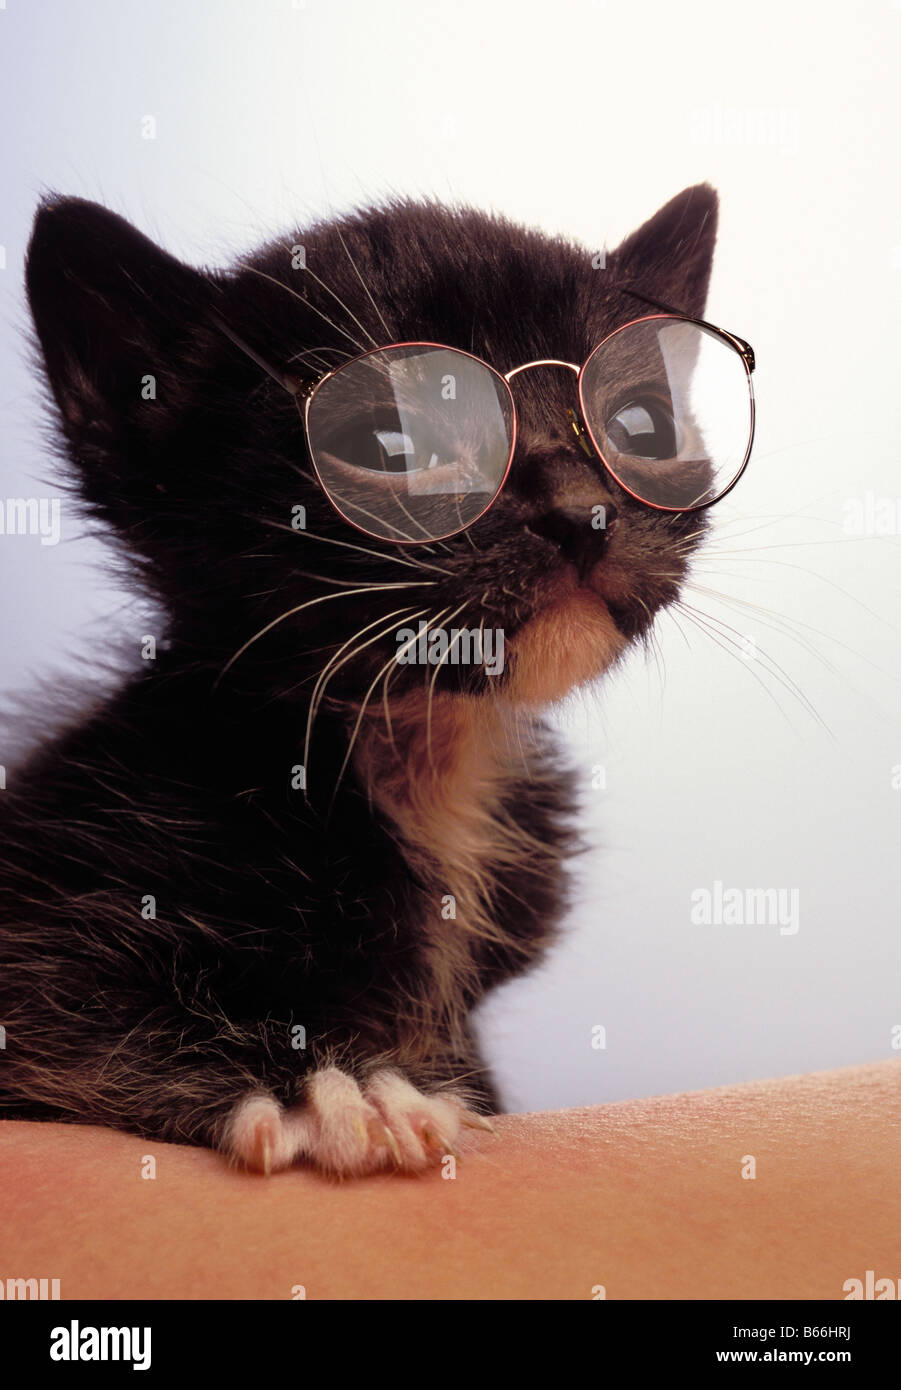 Gatito llevar gafas. Foto de stock